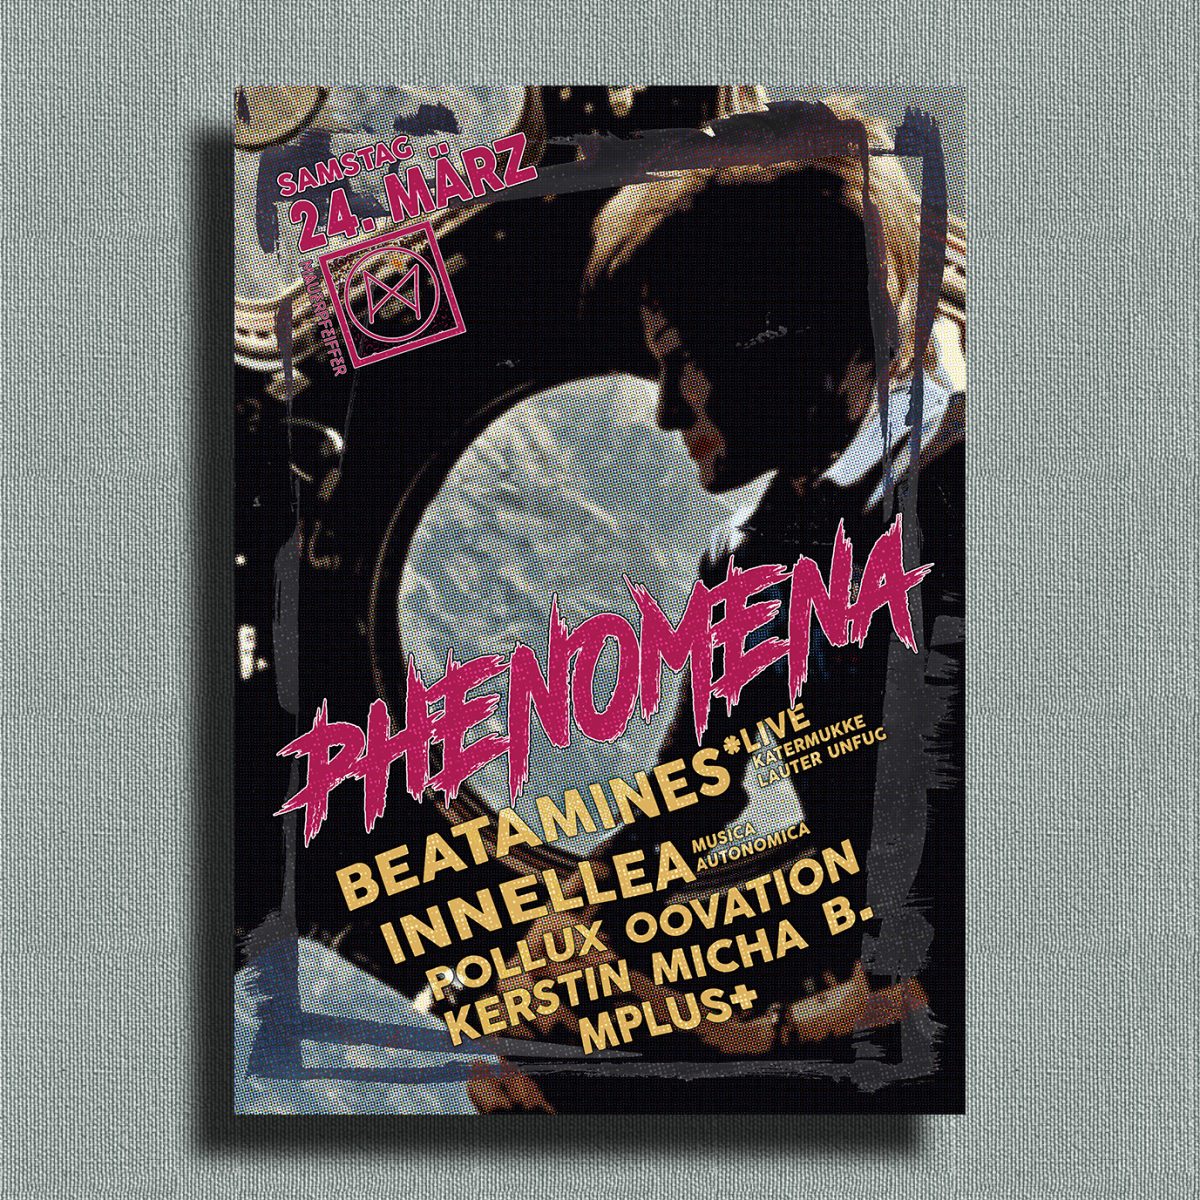 Phenomena ➠ Beatamines Live! & Innellea